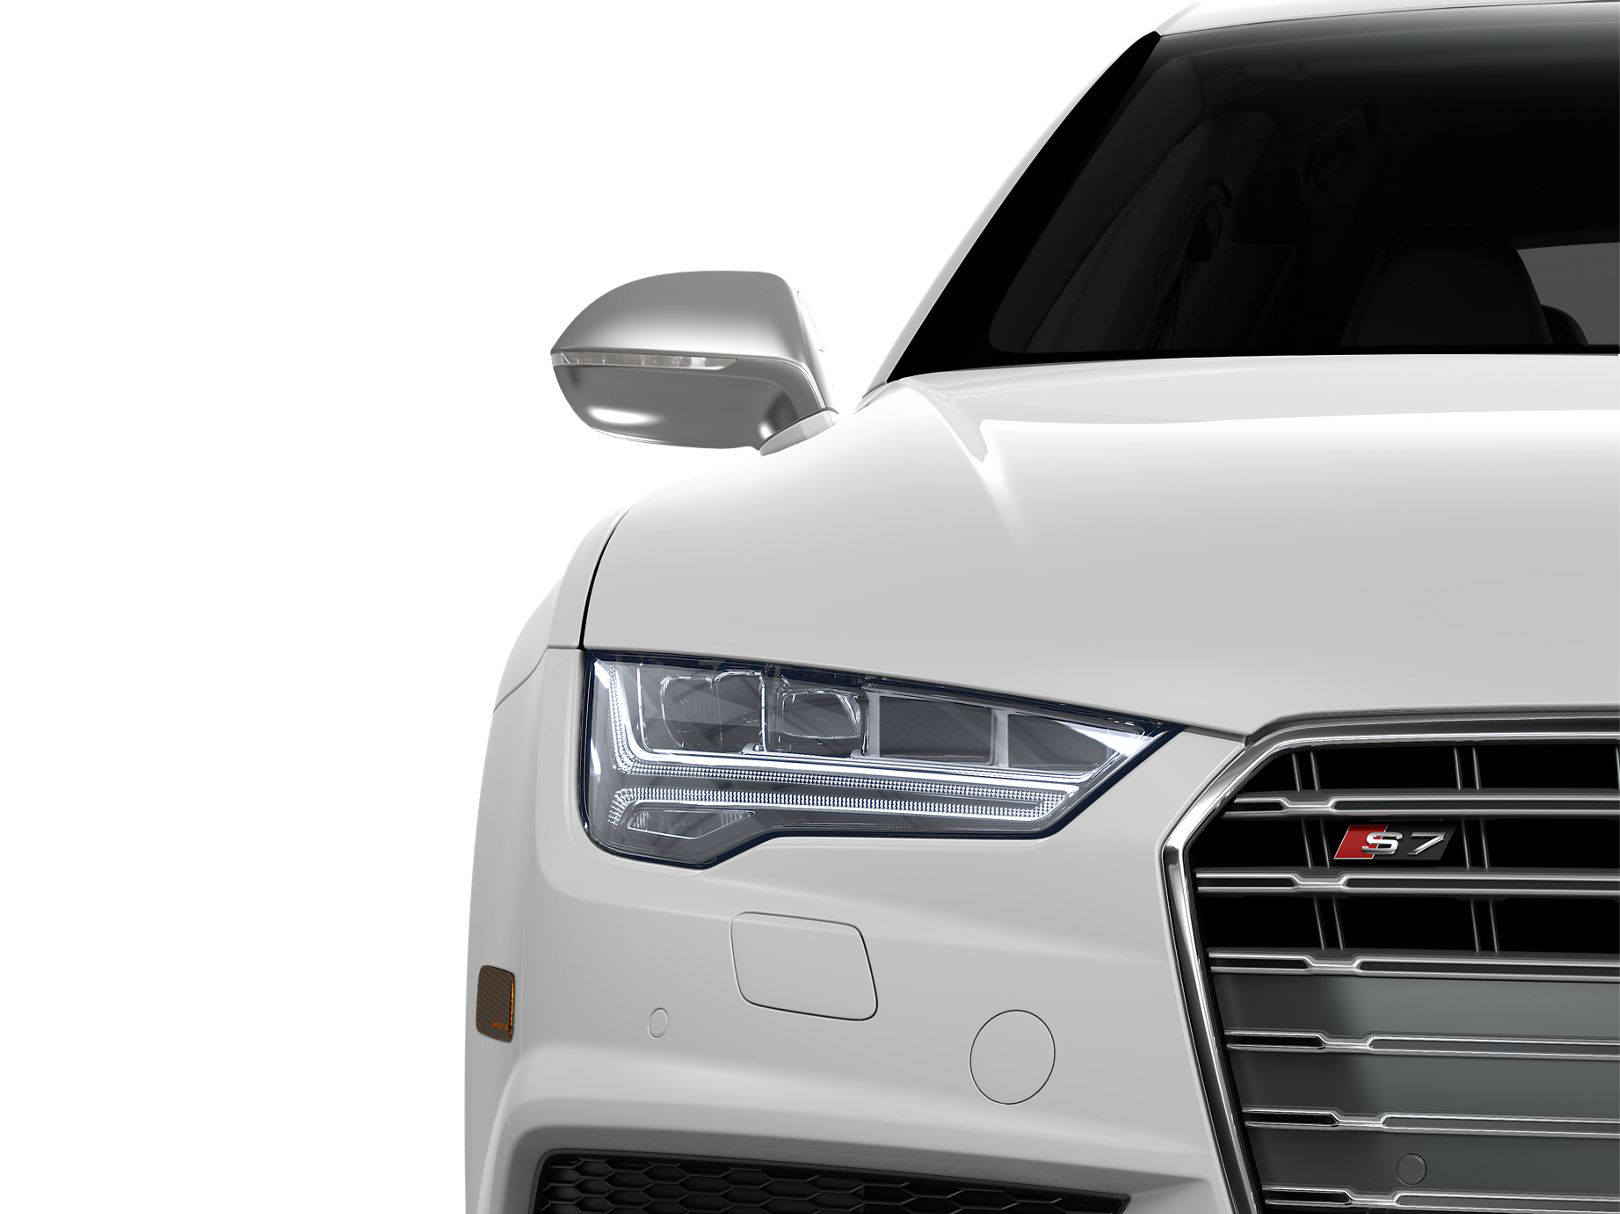 Audi S7 Premium Plus front view